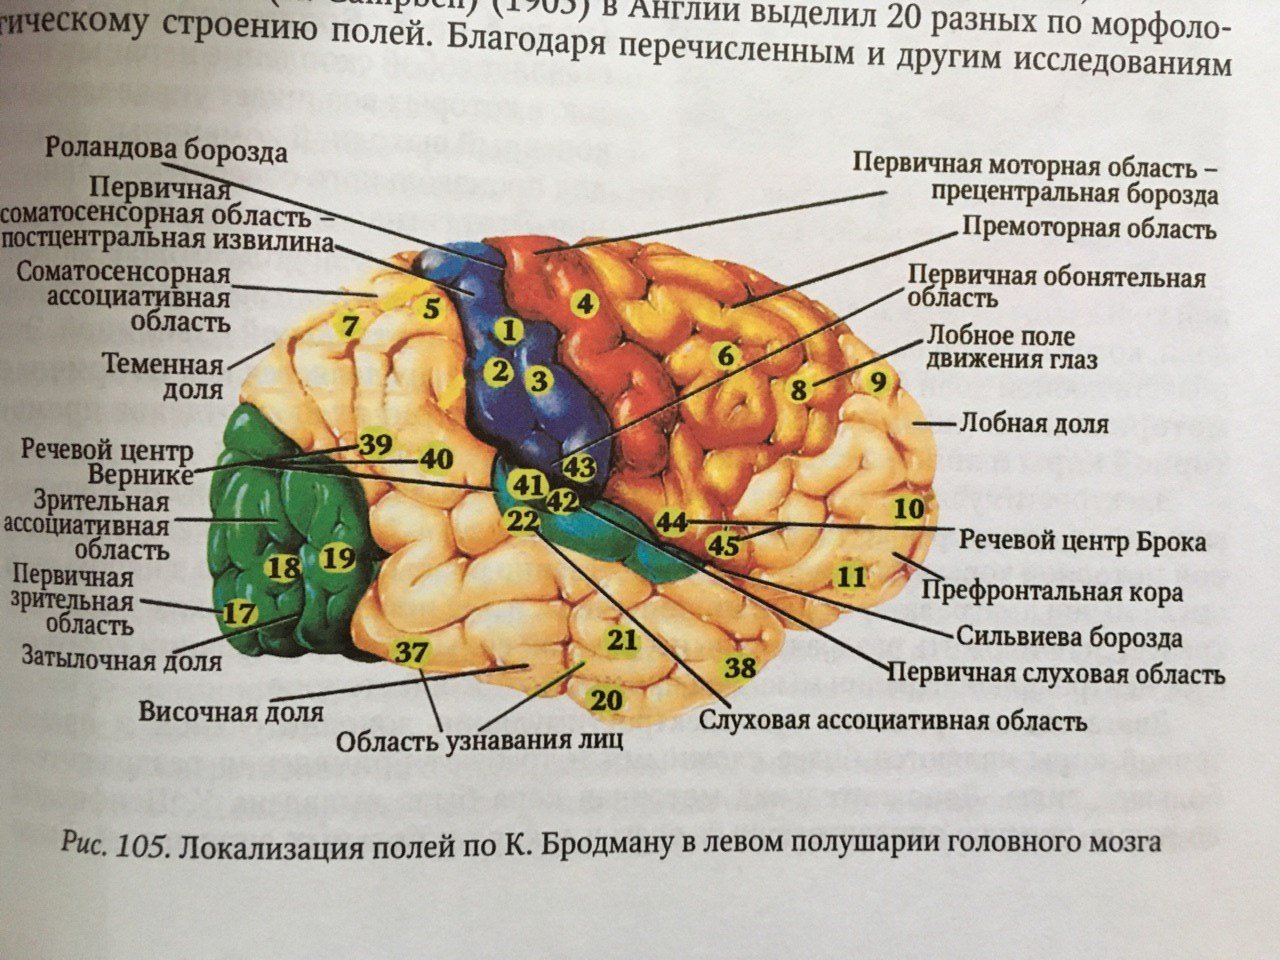 Центральная область мозга. Сильвиева борозда мозга. Головной мозг борозды роландова. Доли борозды и извилины мозга. Борозды доли извилины коры головного мозга.